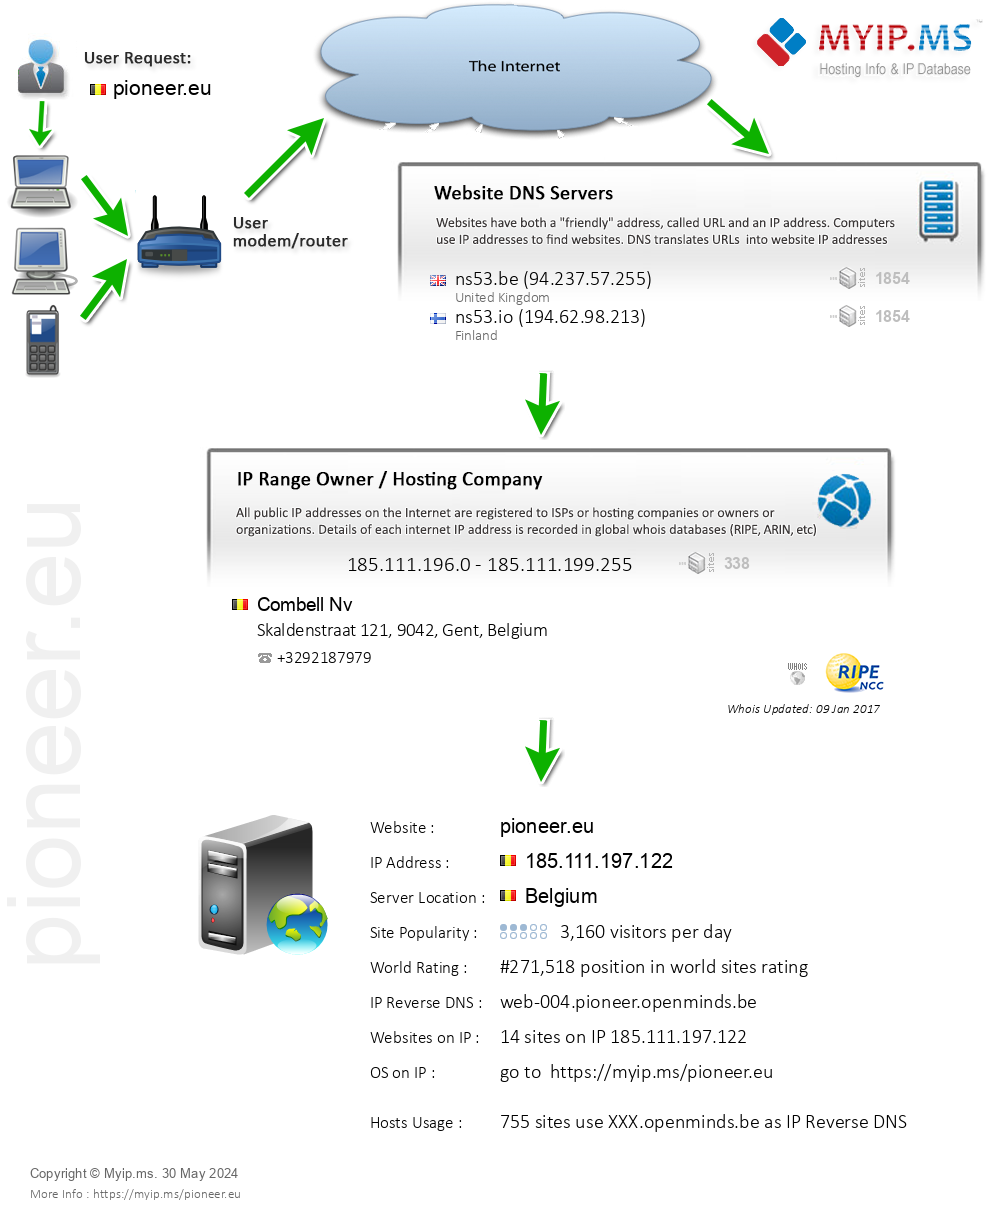 Pioneer.eu - Website Hosting Visual IP Diagram